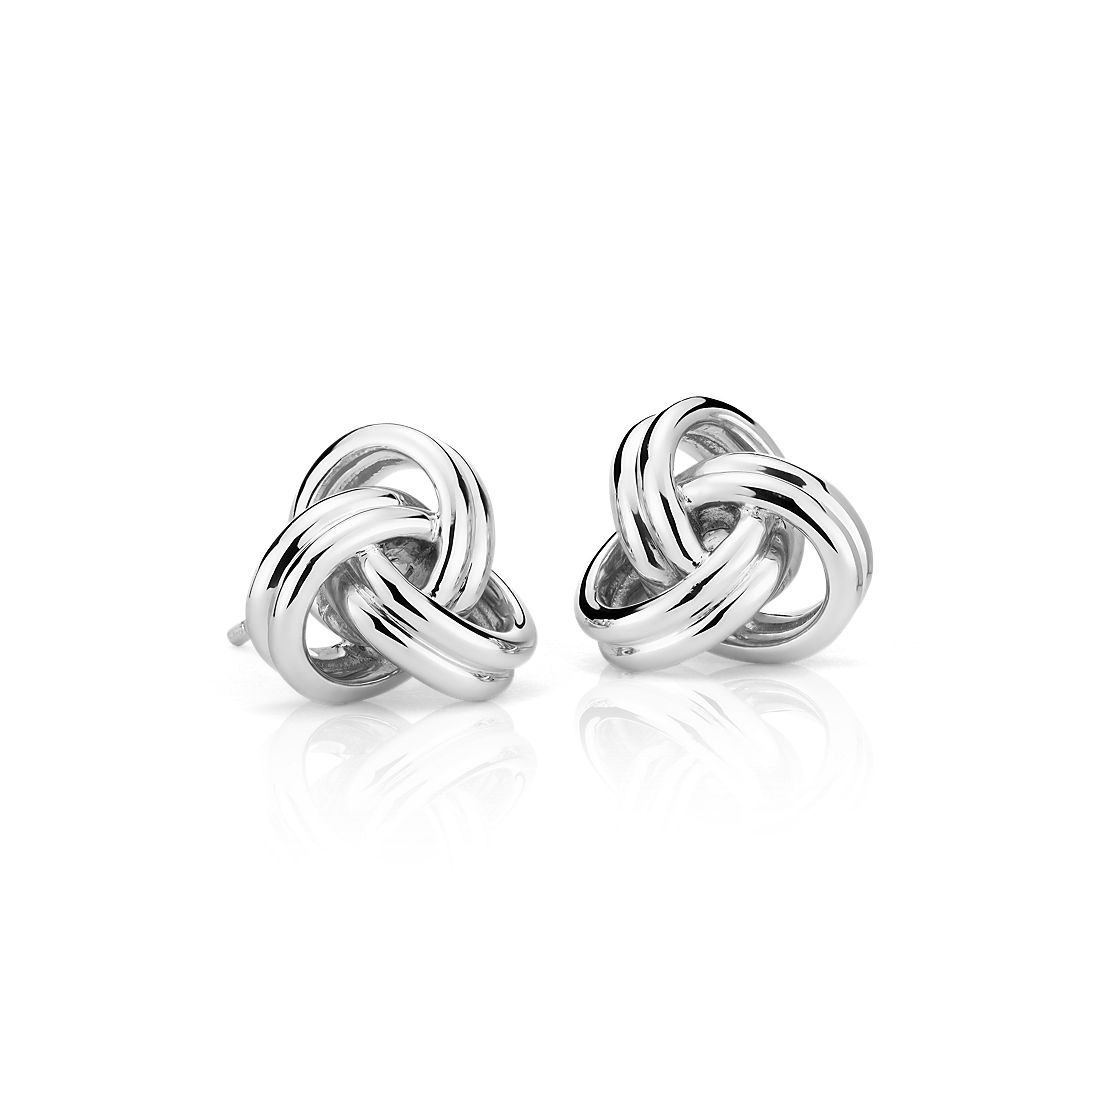 Grande Luxe Love Knot Stud Earrings in Sterling Silver